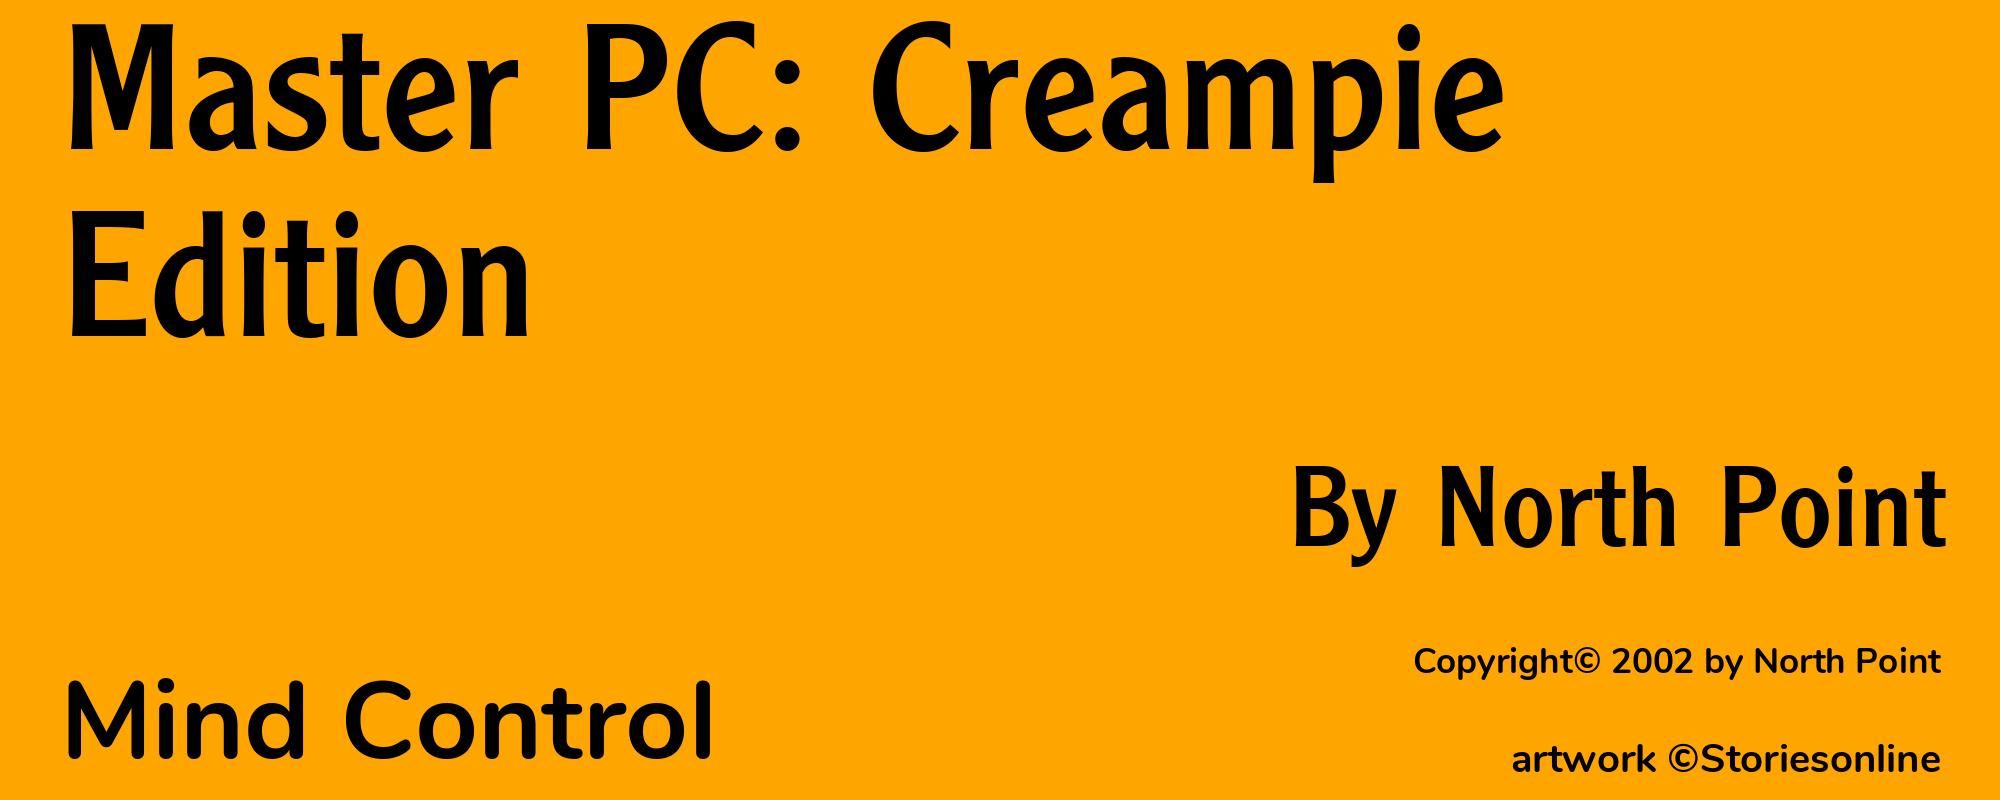 Master PC: Creampie Edition - Cover